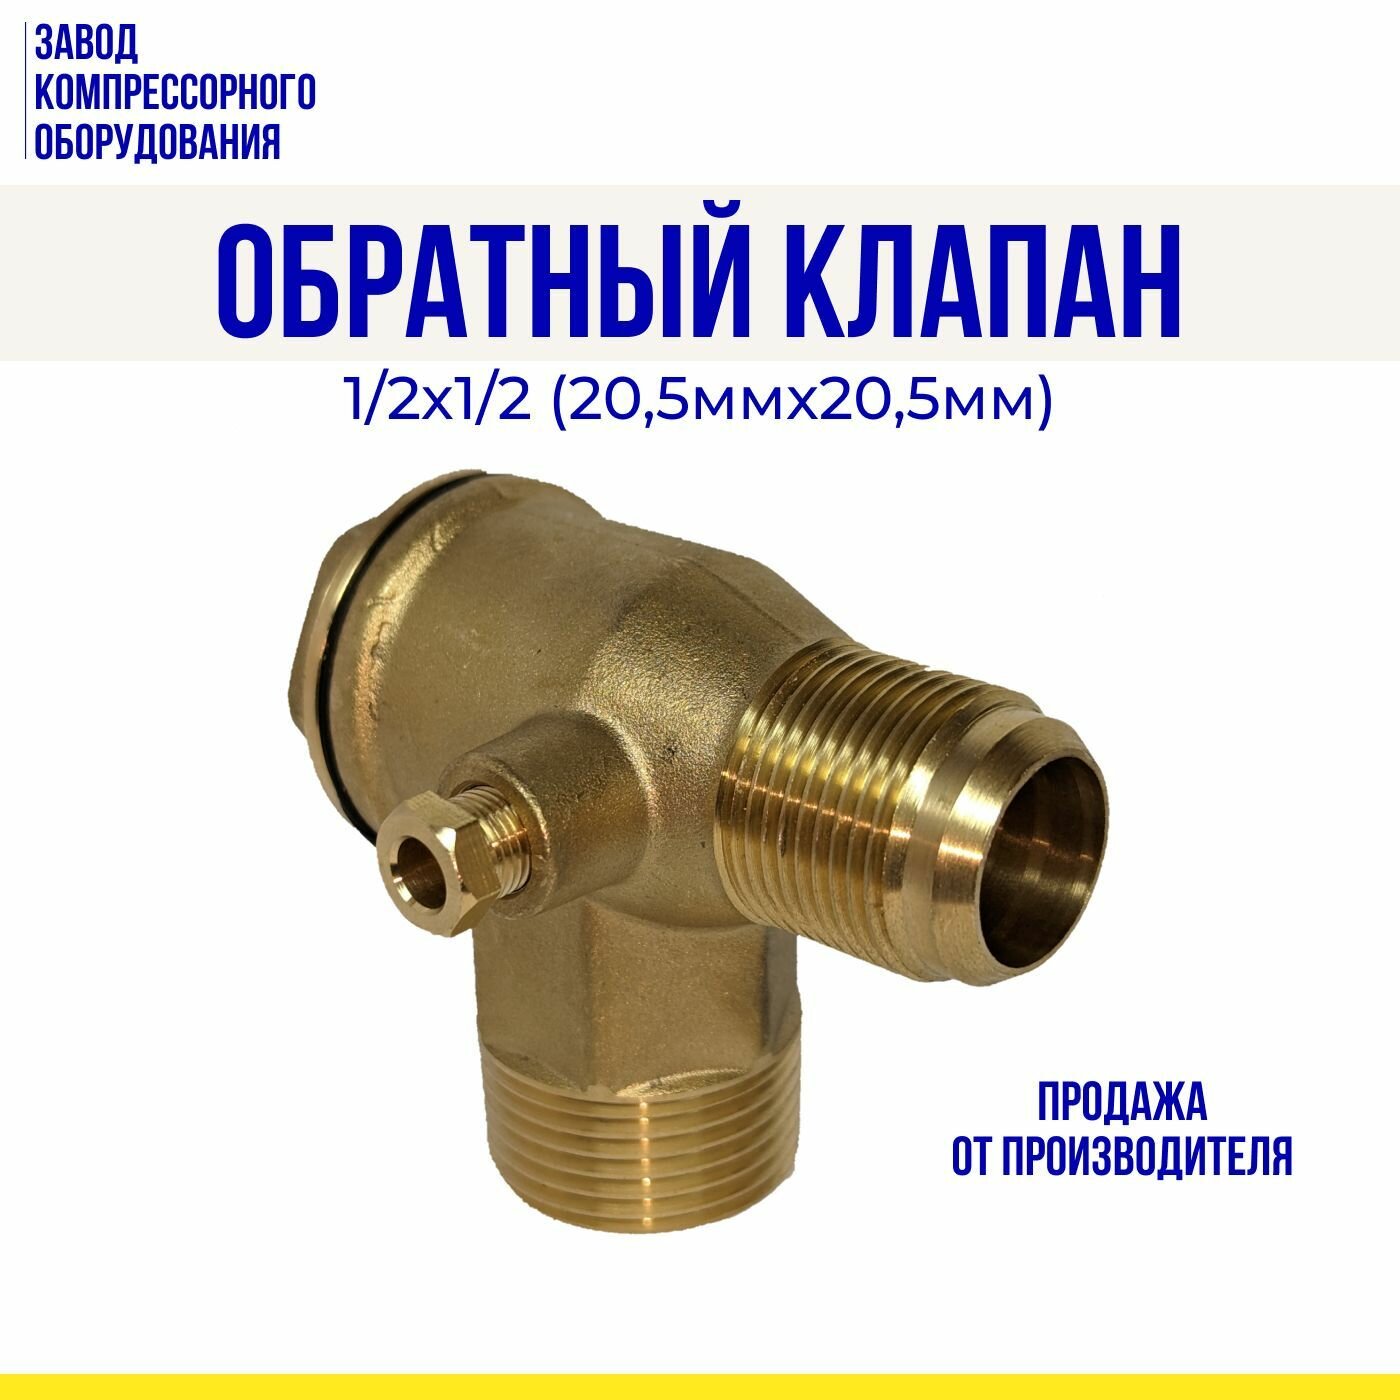 Обратный клапан 1/2х1/2 (20,5мм*20,5мм) для воздушных компрессоров